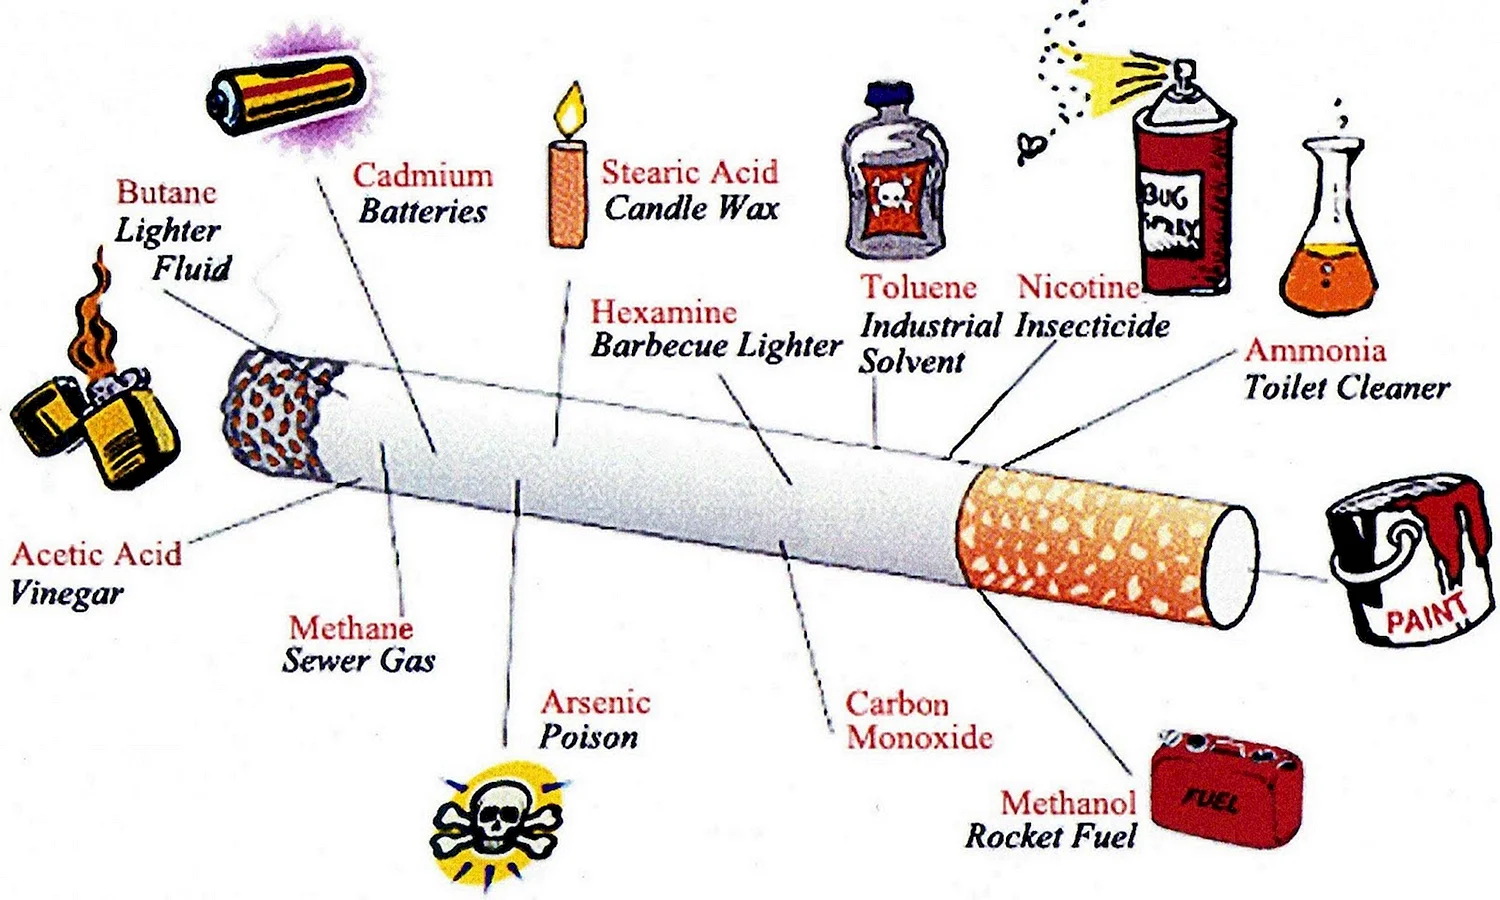 Курение состав сигареты